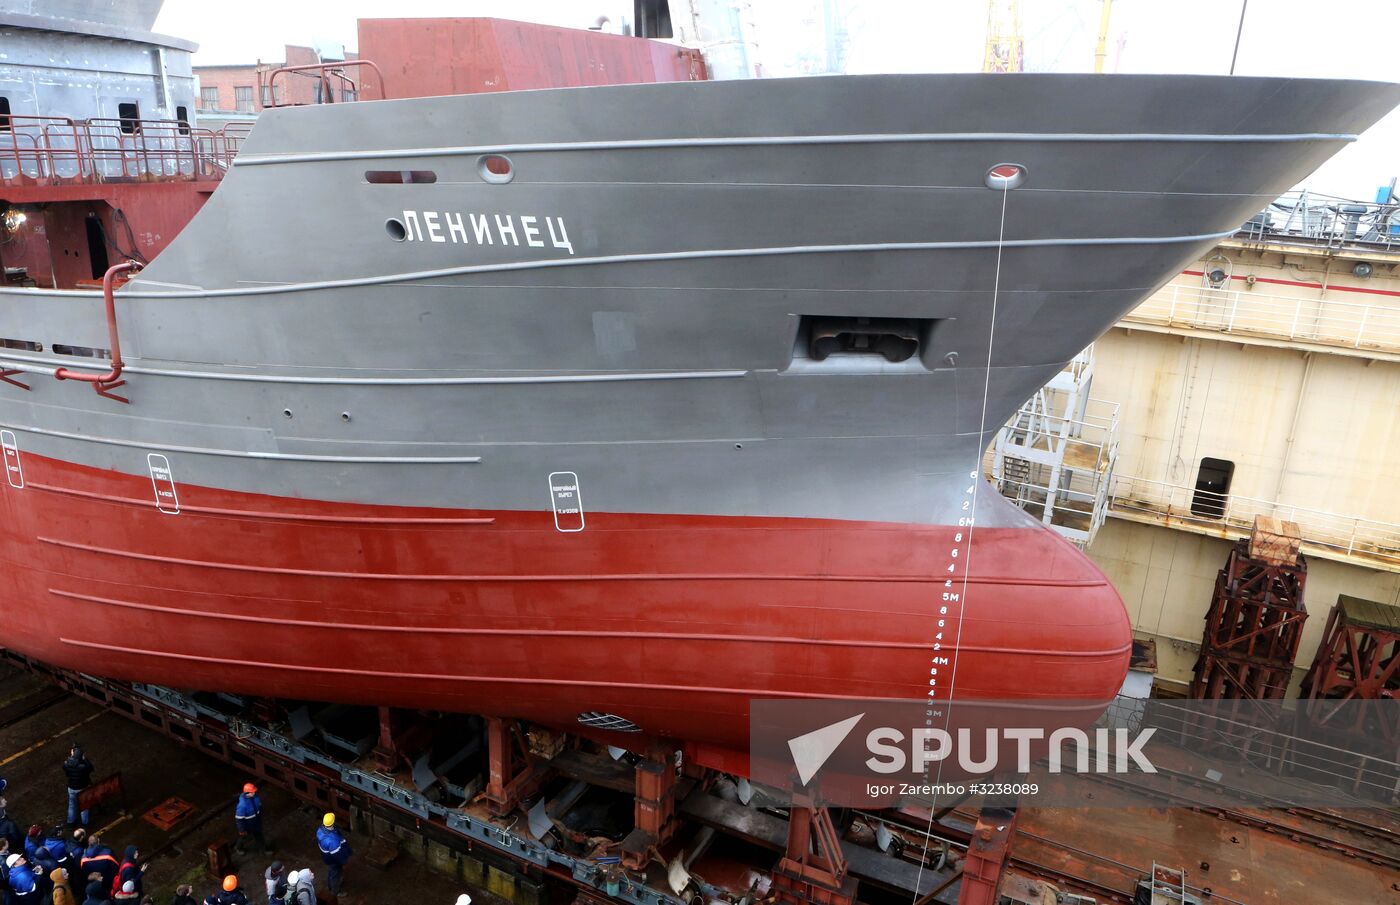 Launching Leninets trawler in Kaliningrad